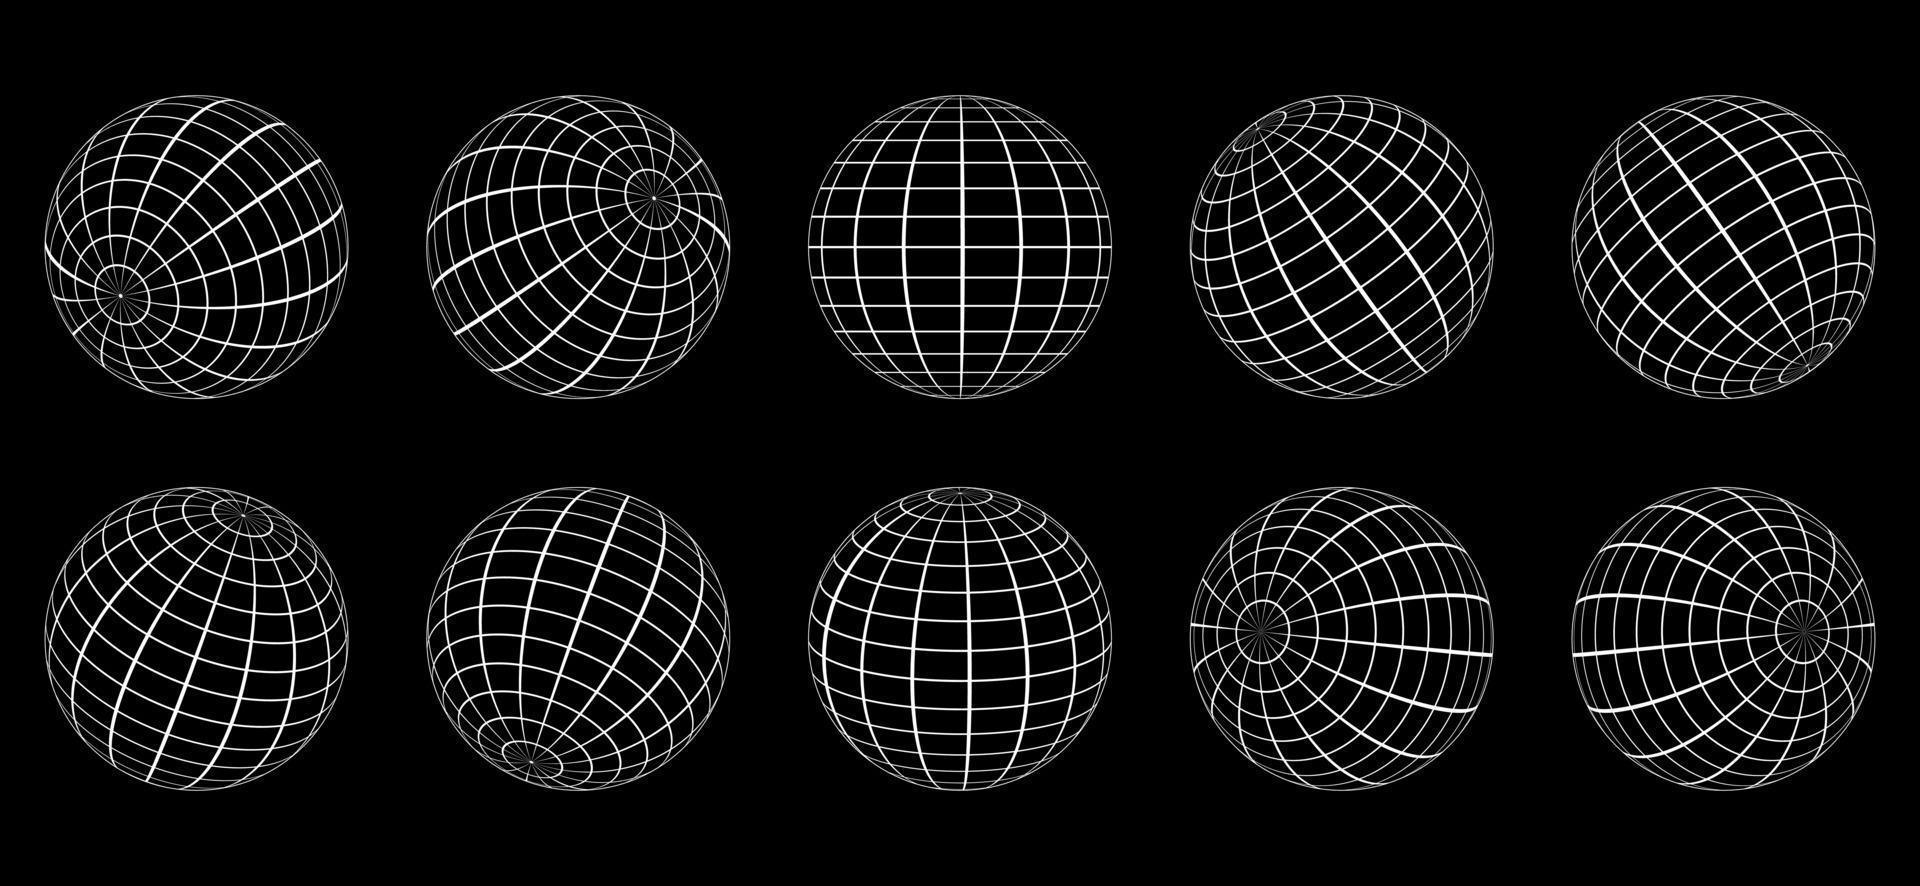 sfera della griglia del globo bianco impostata su sfondo nero. 3d wire latitudine terrestre globale, longitudine. globo terrestre 3d con linea cablata. sfera geometrica della maglia della griglia rotonda. superficie del globo wireframe. vettore isolato.